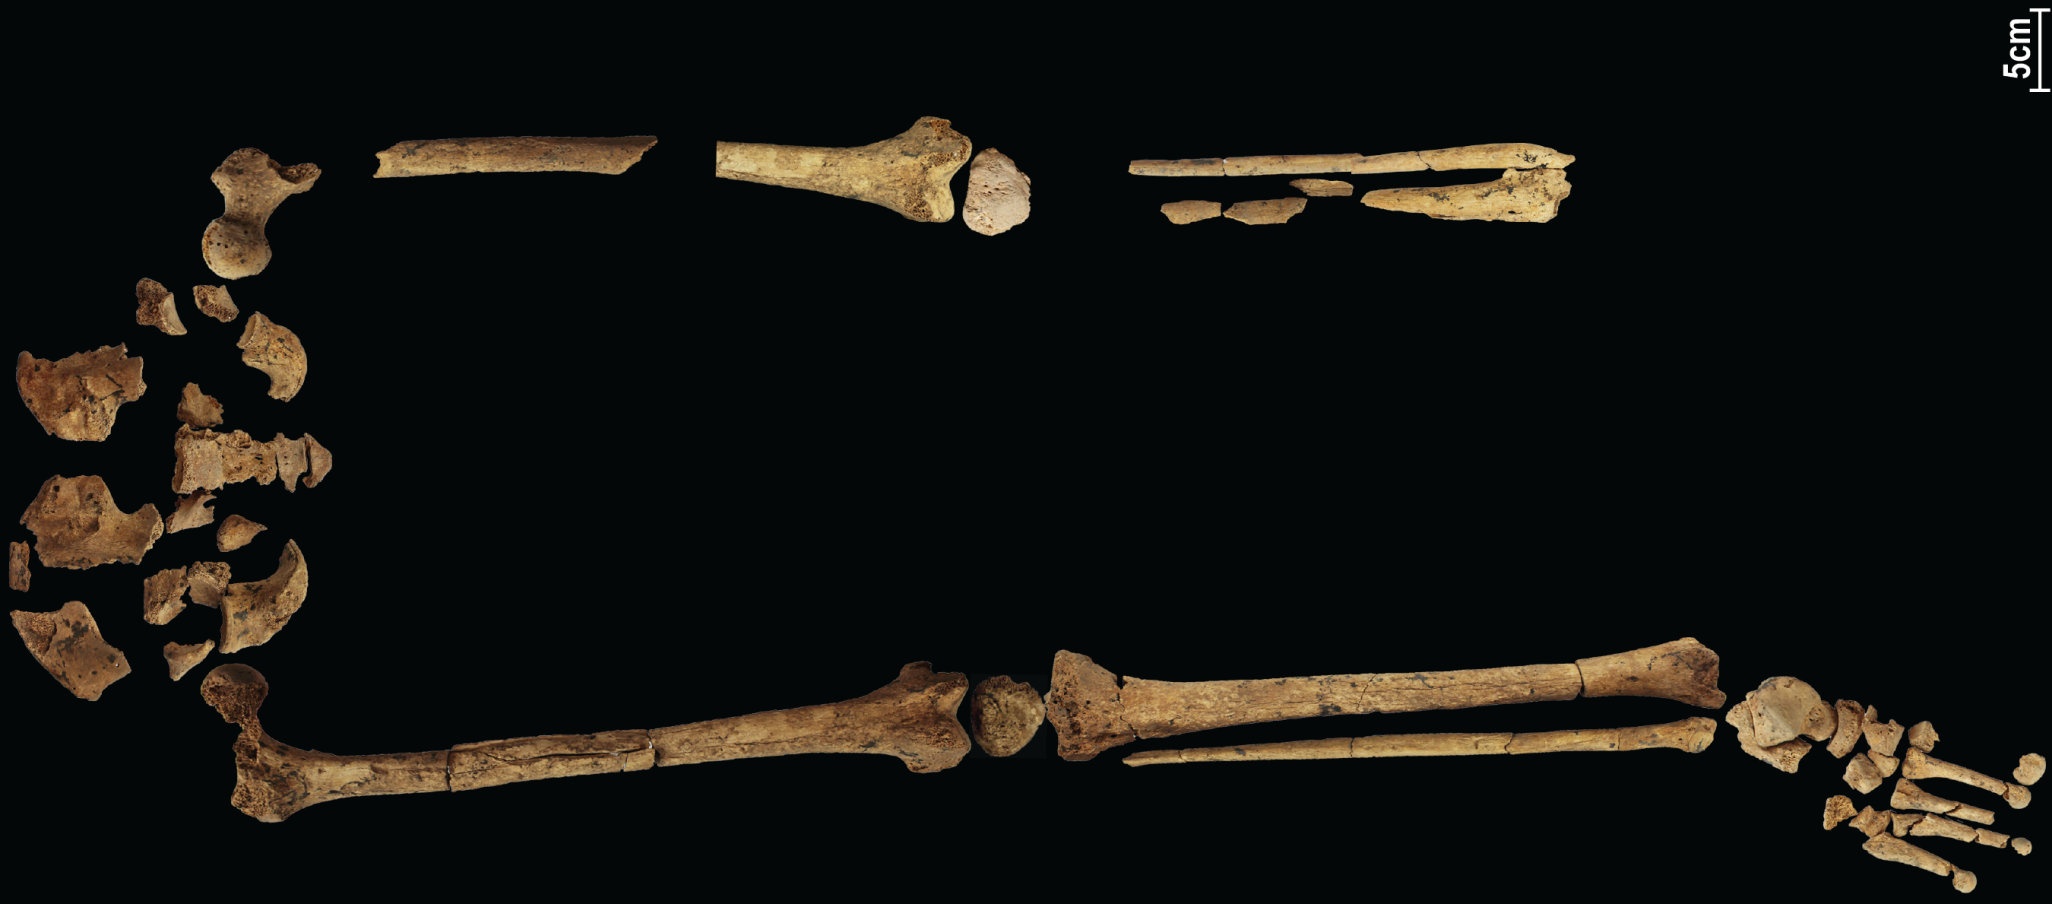 一具具有 31,000 年曆史的骨骼展示了已知最早的複雜手術，可以改寫歷史！ 4